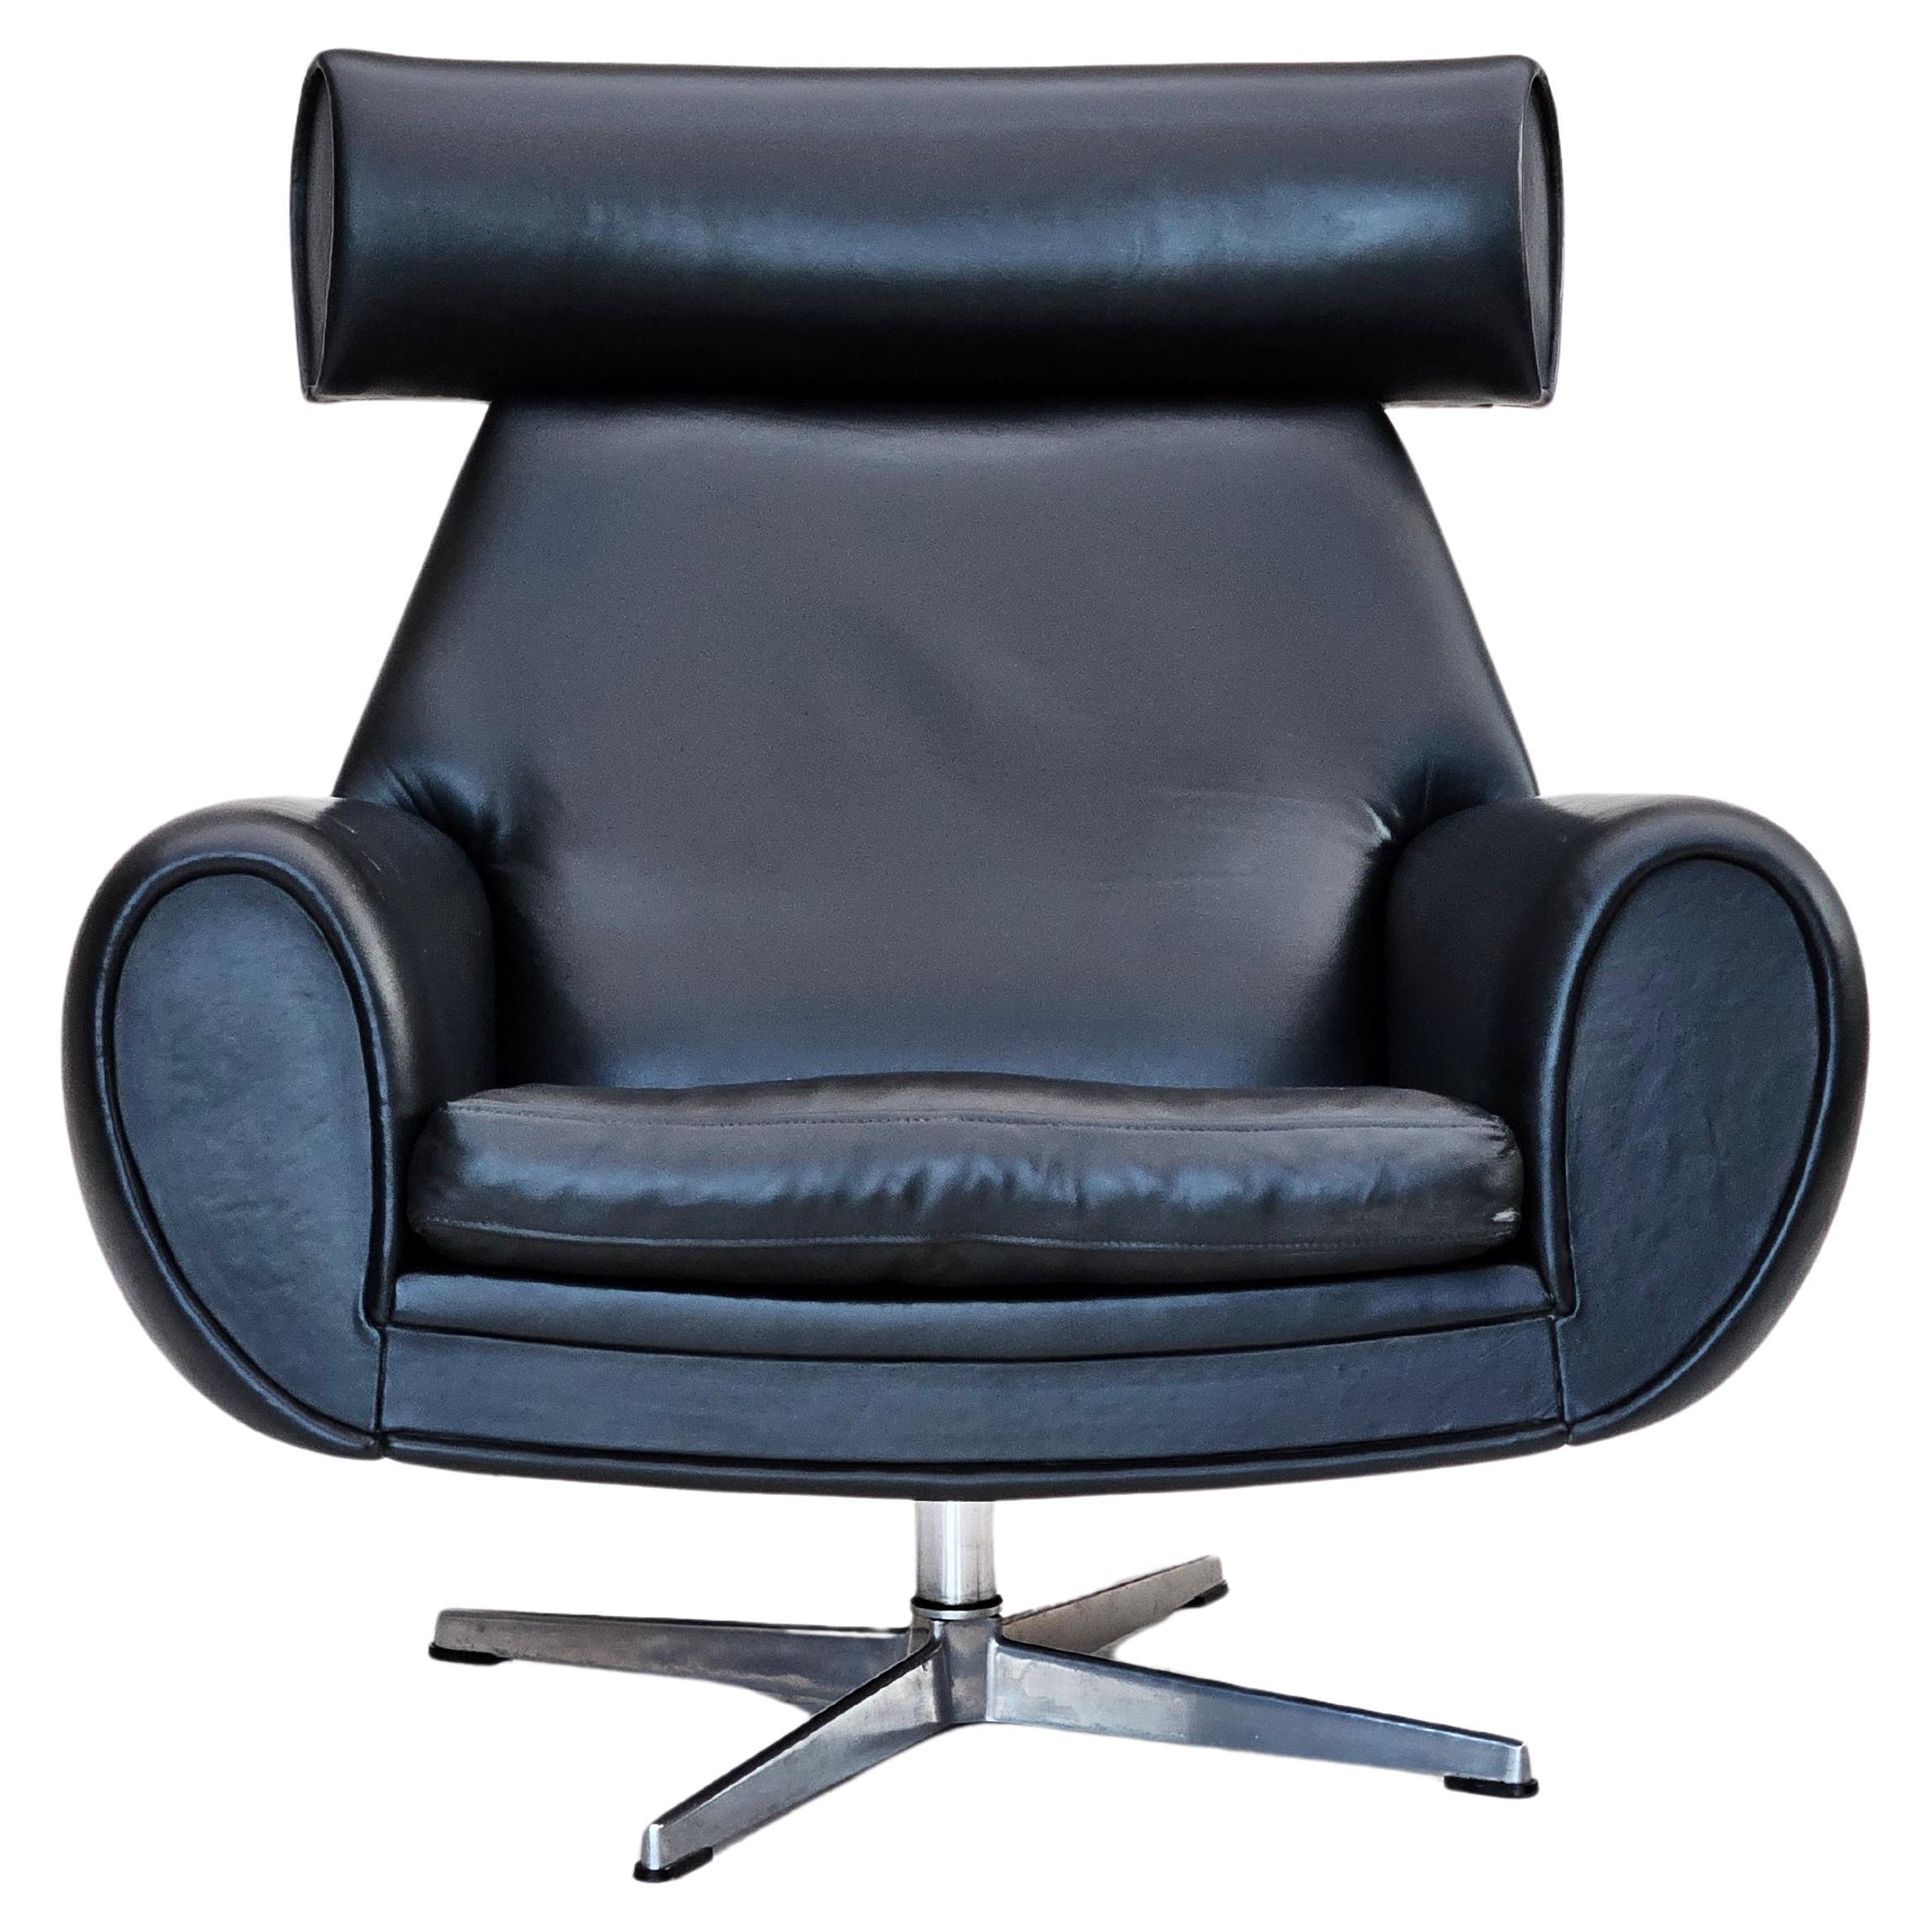 1960s, Danish swivel chair, original condition, leather, cast aluminium.